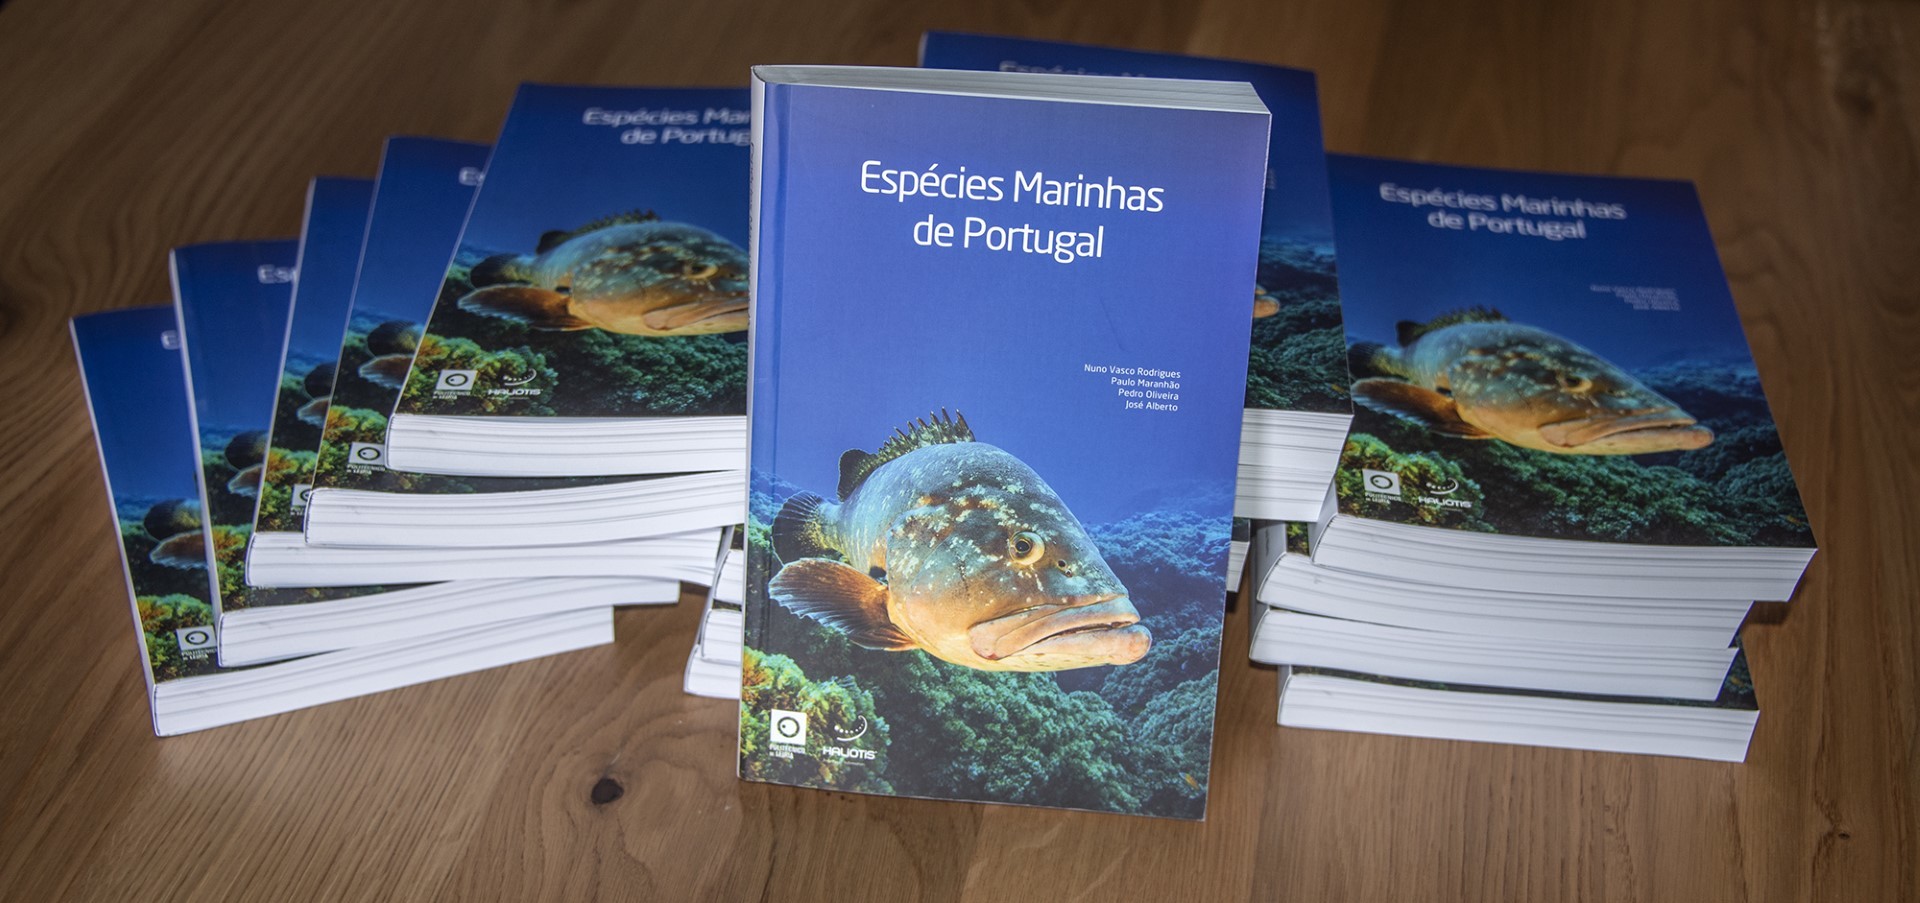 Apresentação do livro: "Espécies Marinhas de Portugal", de Nuno Vasco Rodrigues